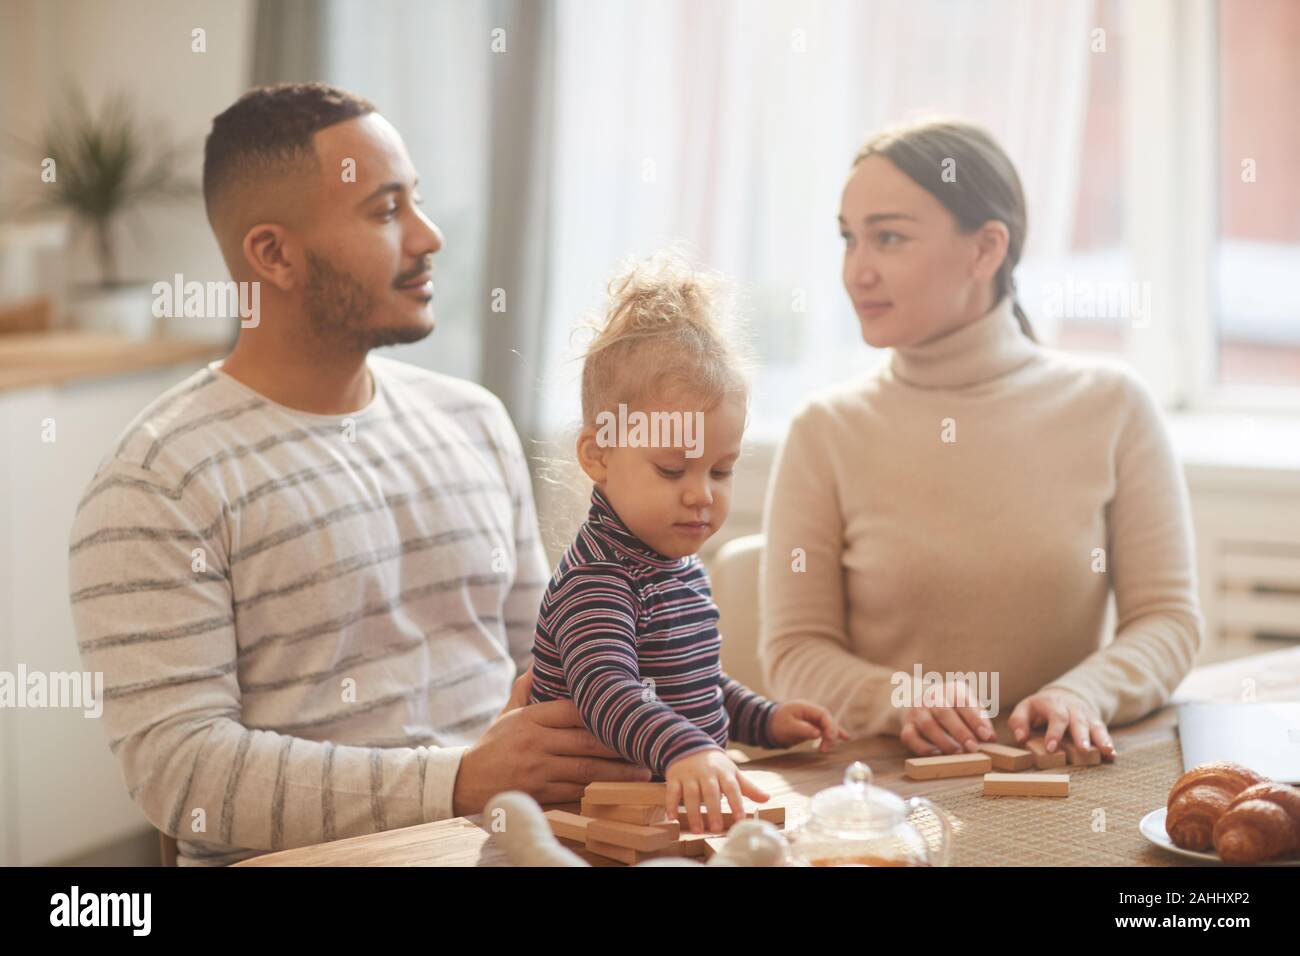 In warmen Tönen Porträt des modernen Mixed-race Familie an jedem anderen Suchen, beim Spielen mit niedlichen Tochter zu Hause Stockfoto